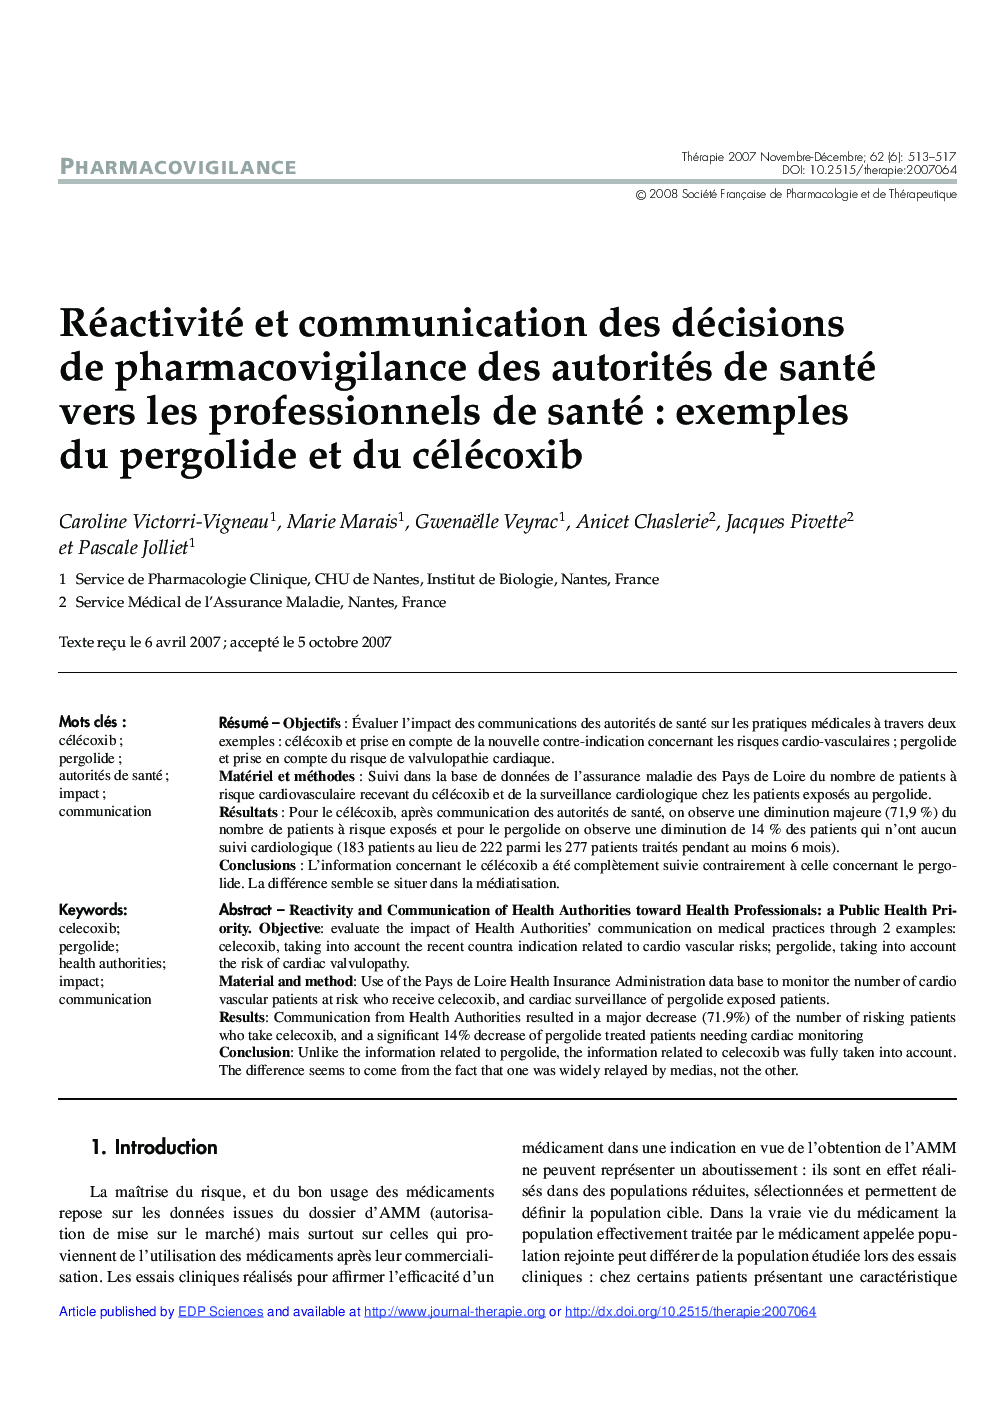 Réactivité et communication des décisions de pharmacovigilance des autorités de santé vers les professionnels de santé : exemples du pergolide et du célécoxib